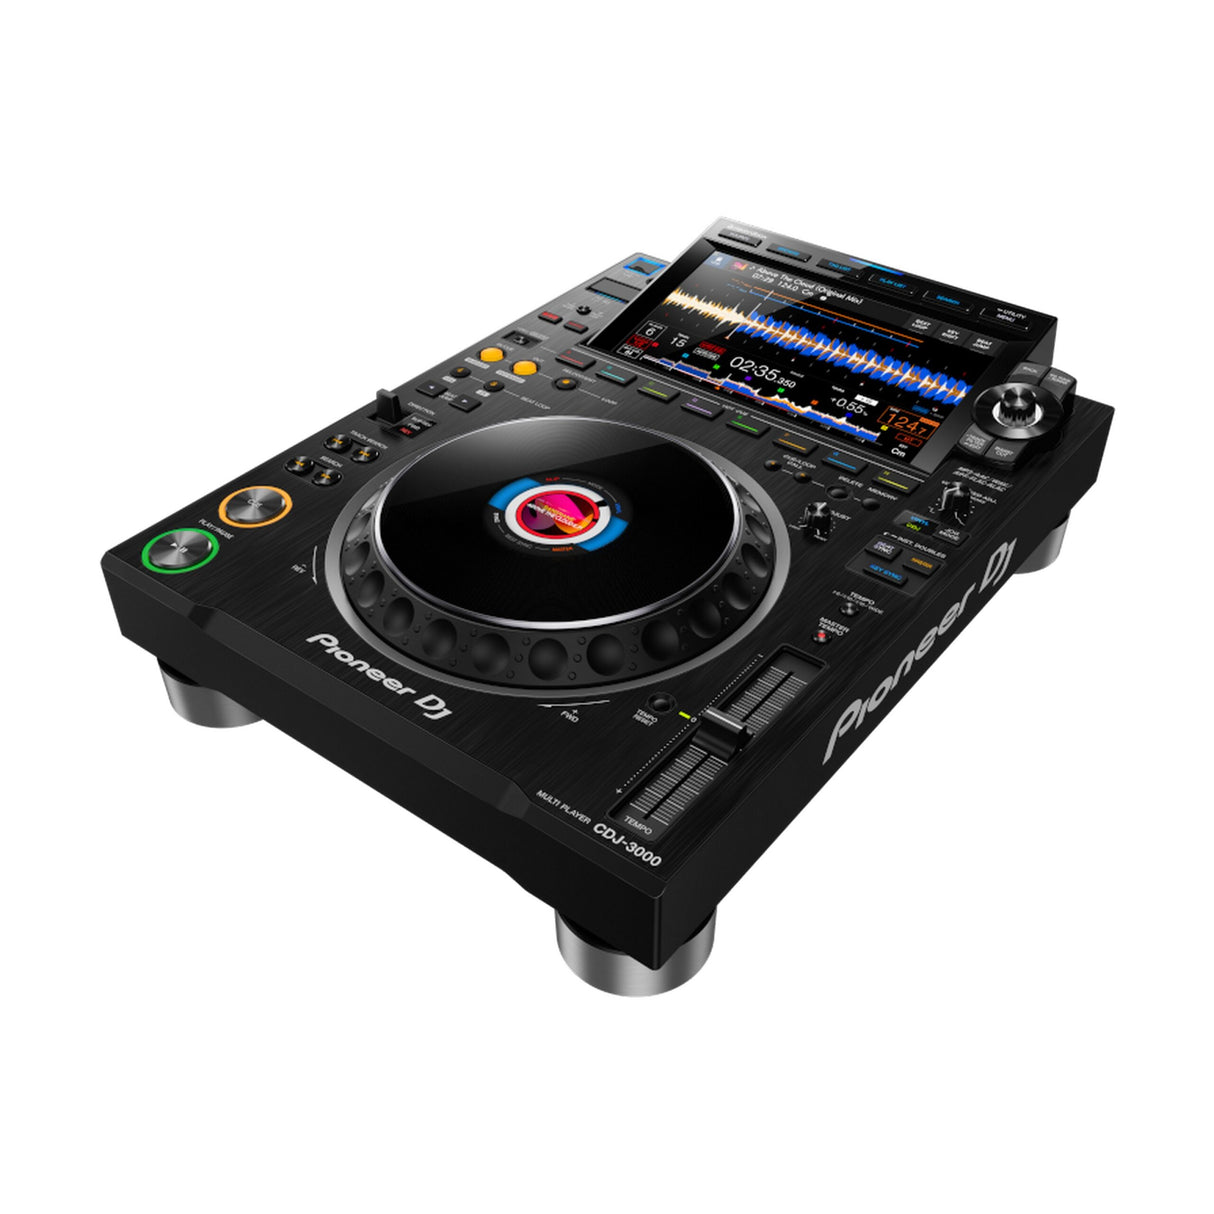 Pioneer DJ CDJ-3000 Professional DJ Multi Player, Black